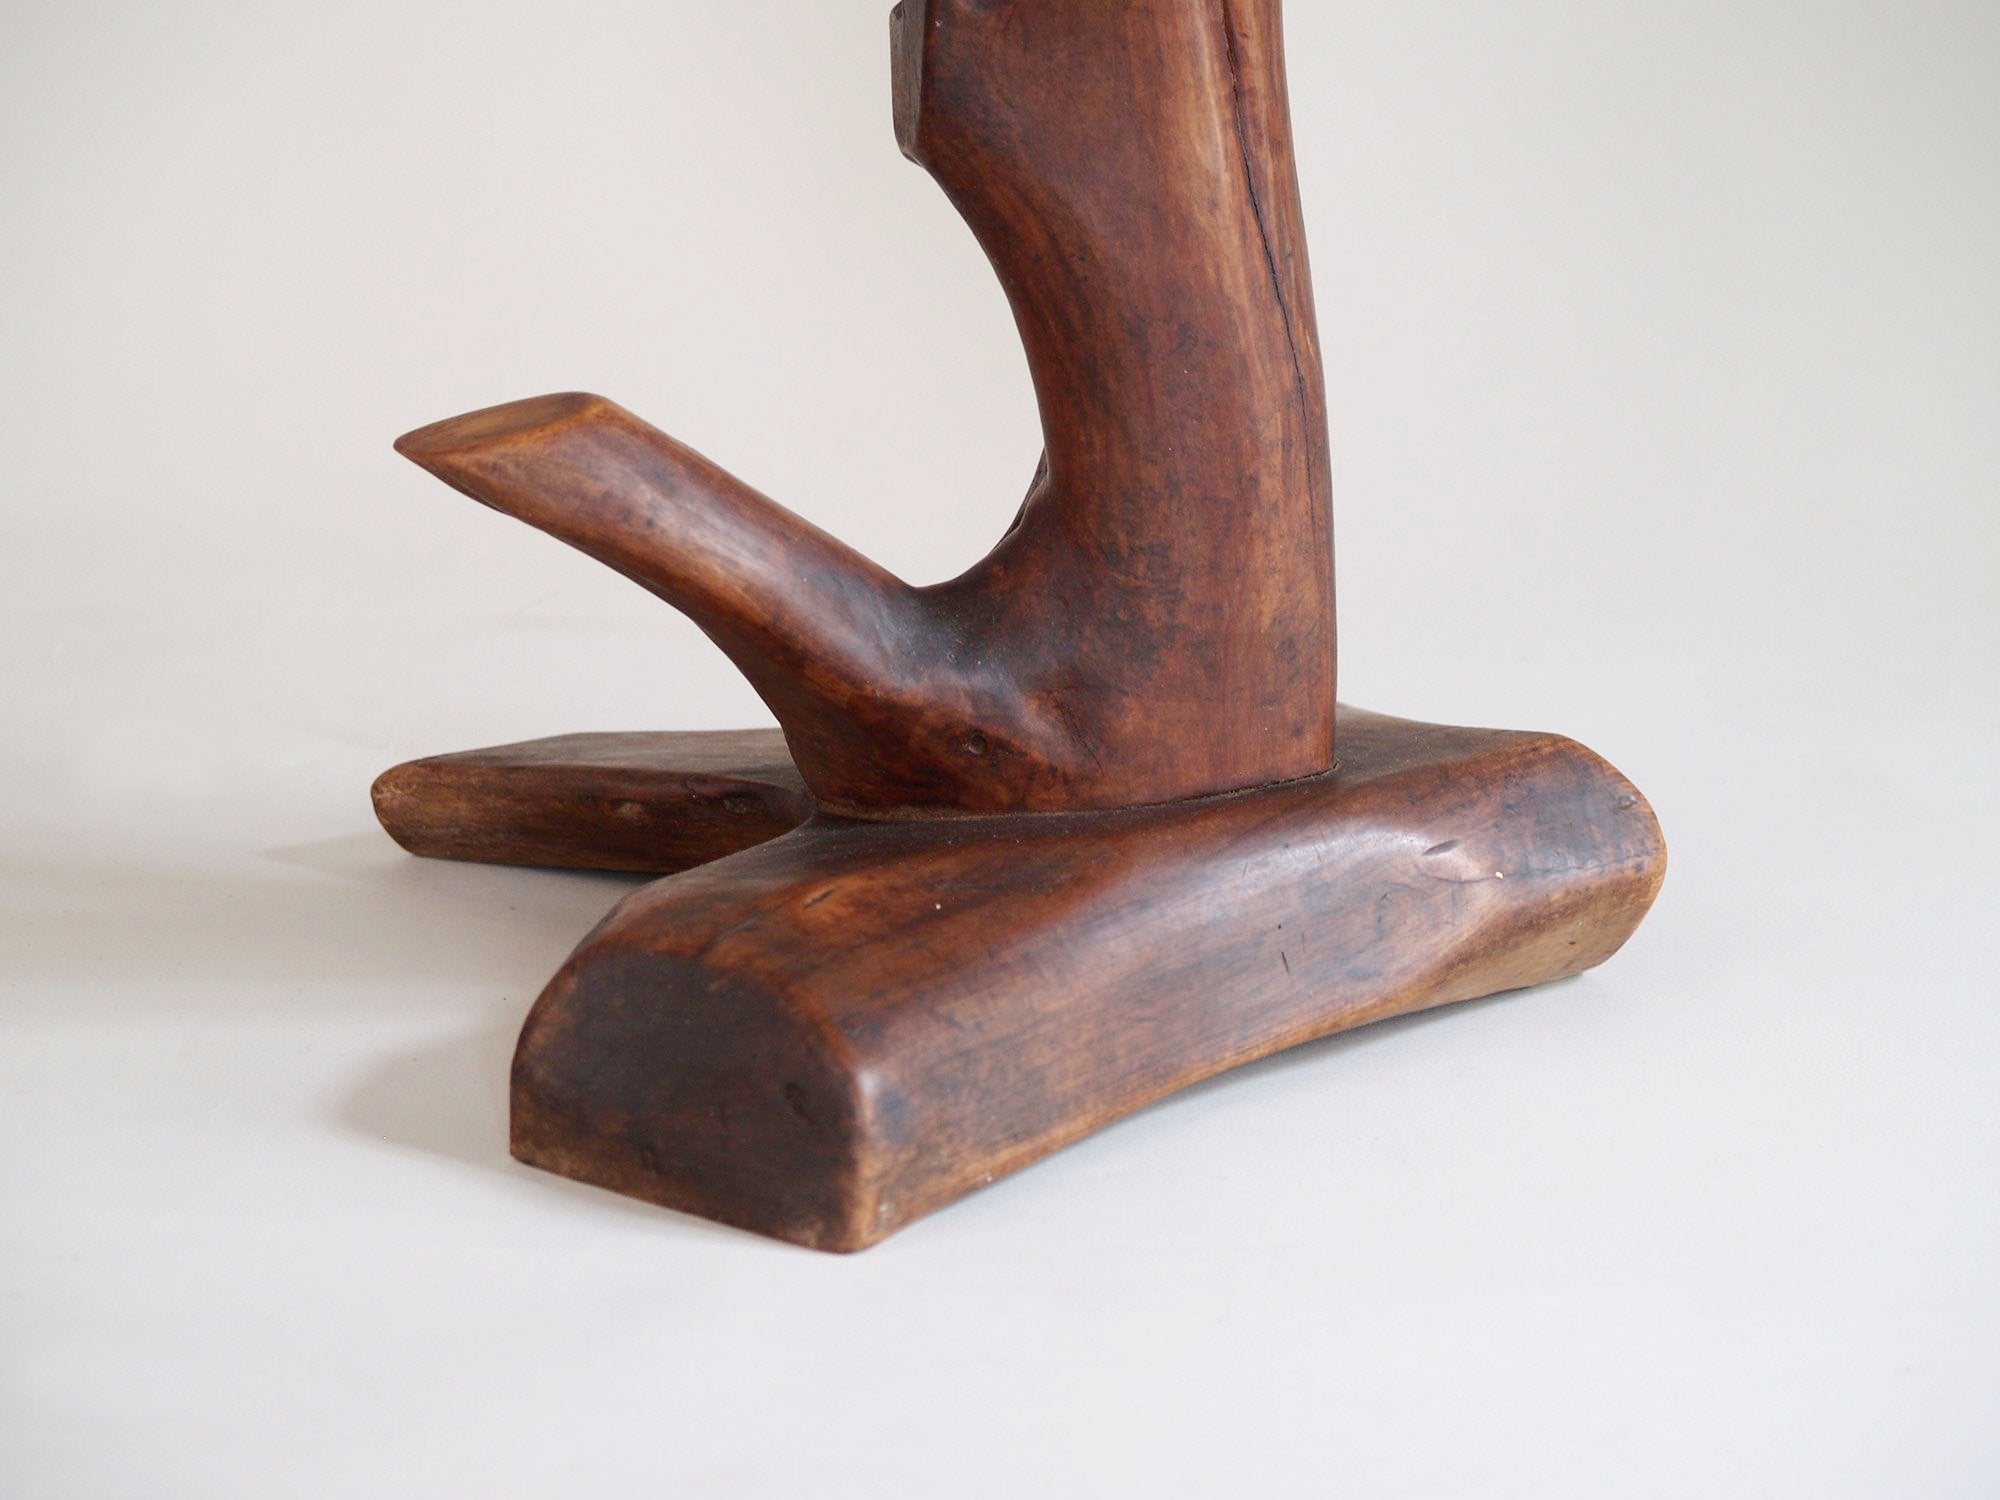 Guéridon "primitiviste" en bois sculpté et céramique par Pol, France (vers 1960).."Primitivist" occasionnal coffee table by Pol, France (circa 1960)